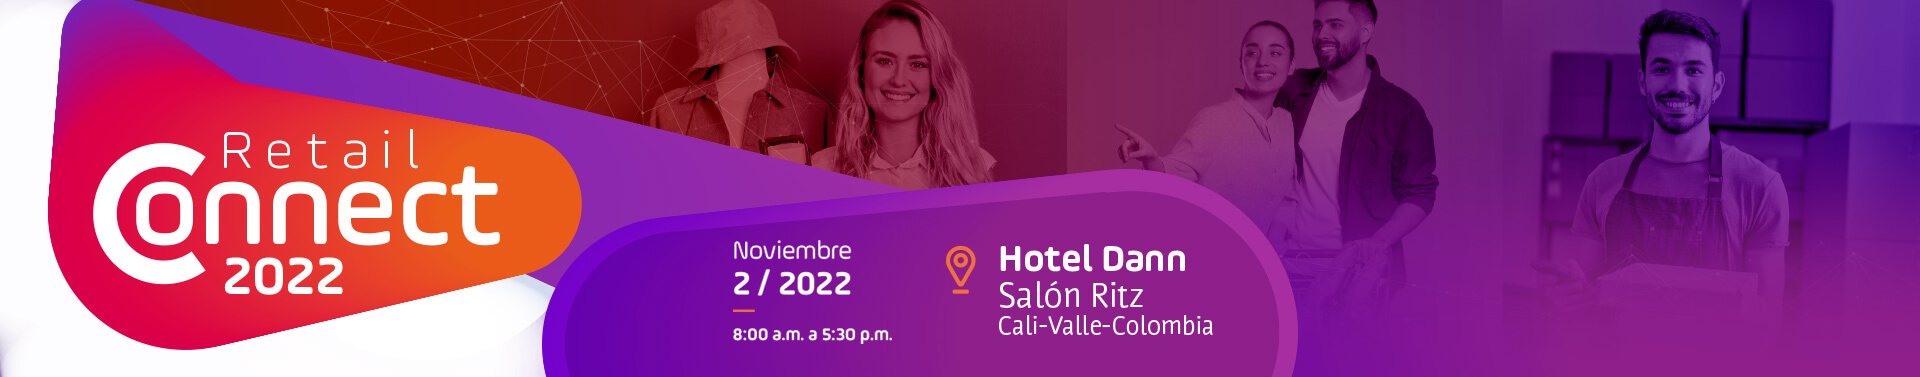 retail connect 2022 noviembre 2 del 2022 de 9 a 5 p.m. en el hotel Dann